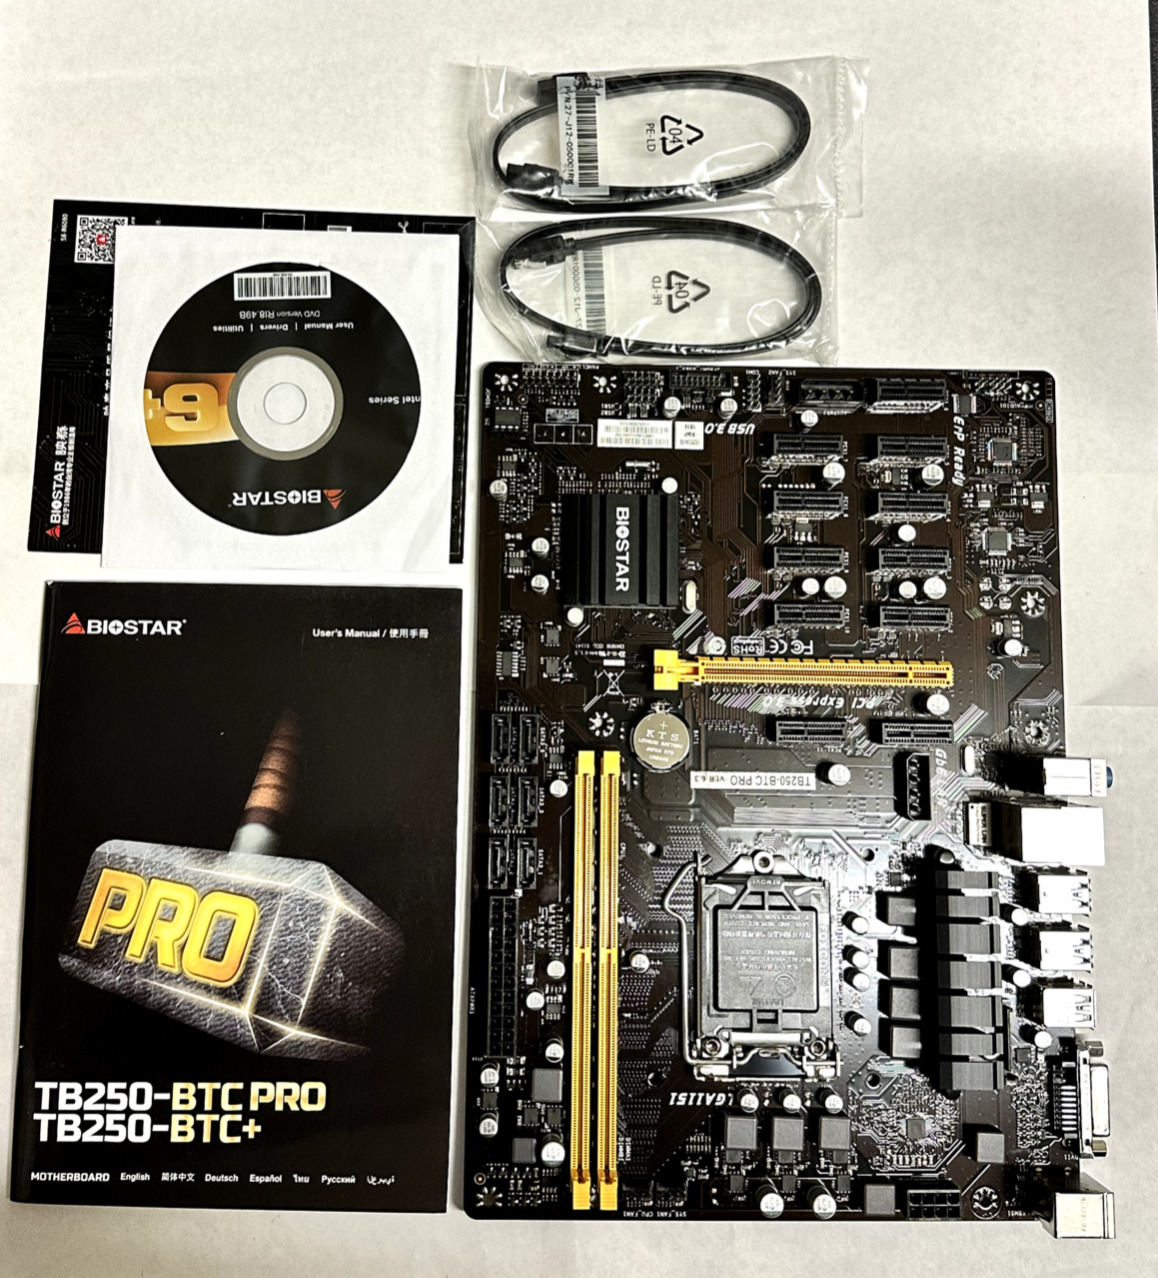 BIOSTAR TB250-BTC Pro Motherboard